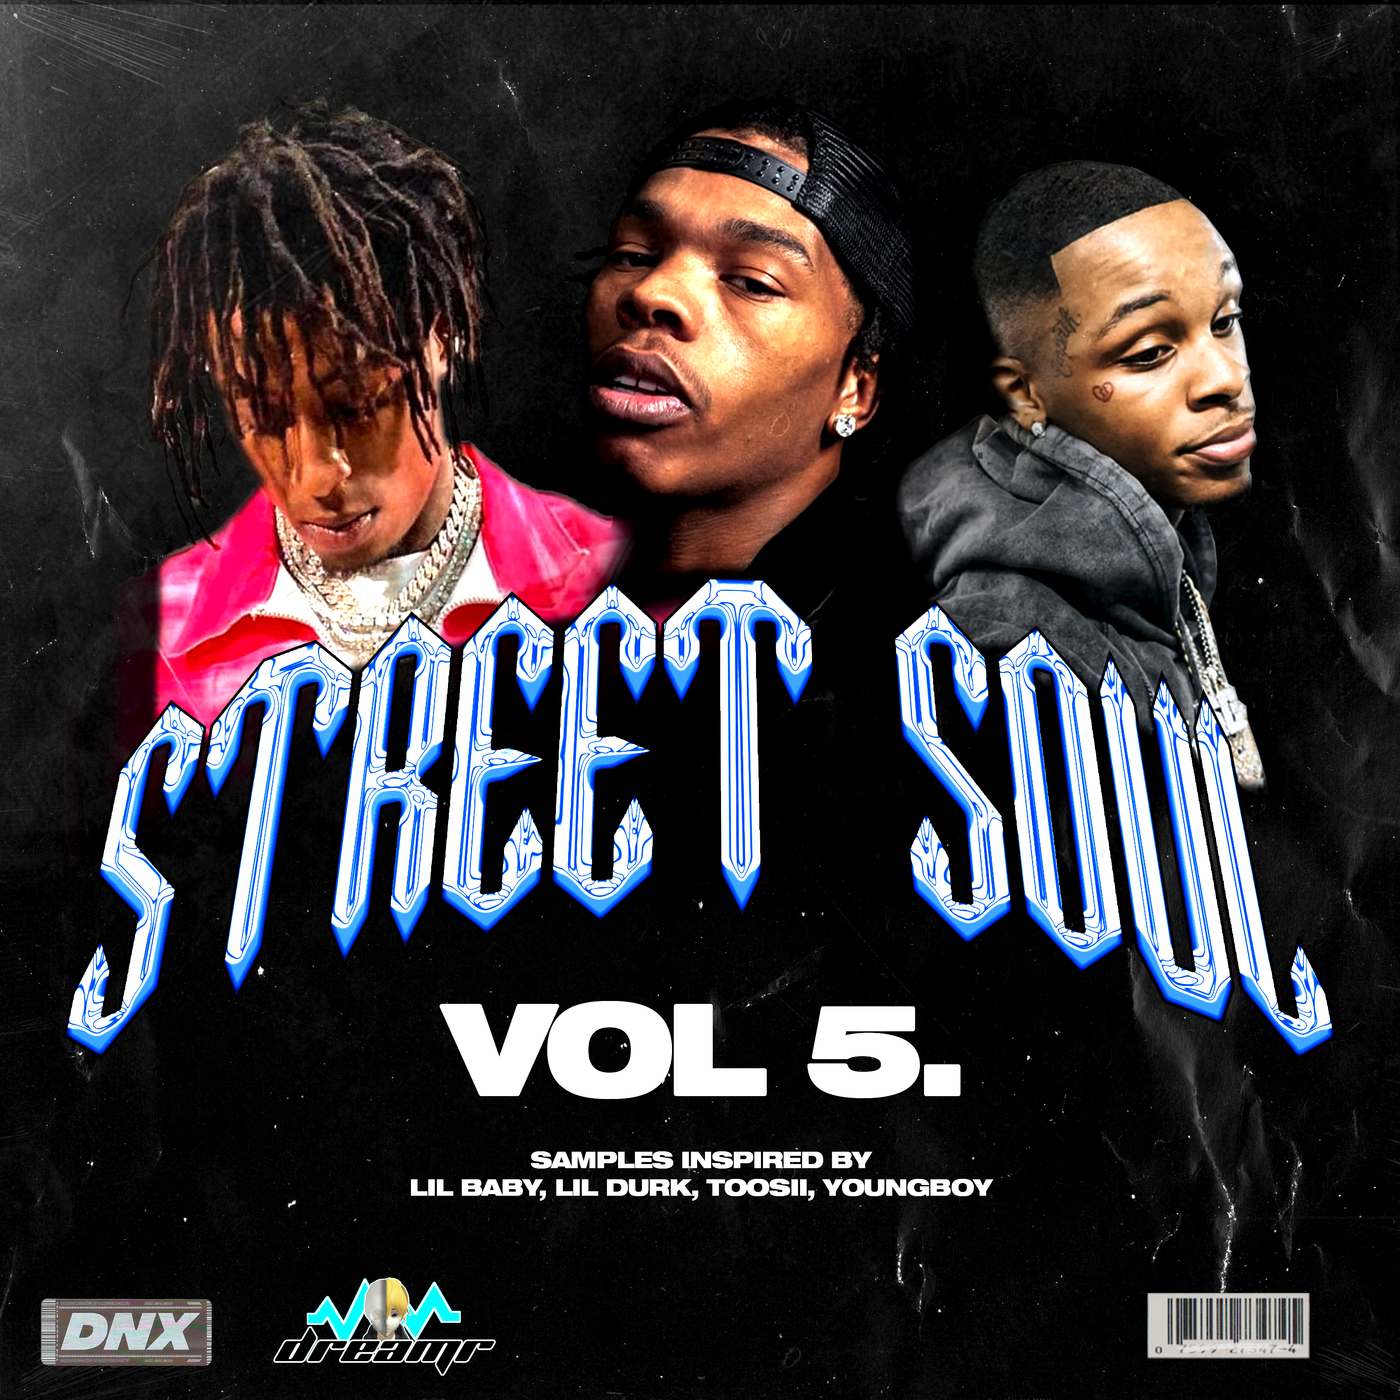 Street Soul Vol. 5 - Sample Pack - DNX - Do Not Cross